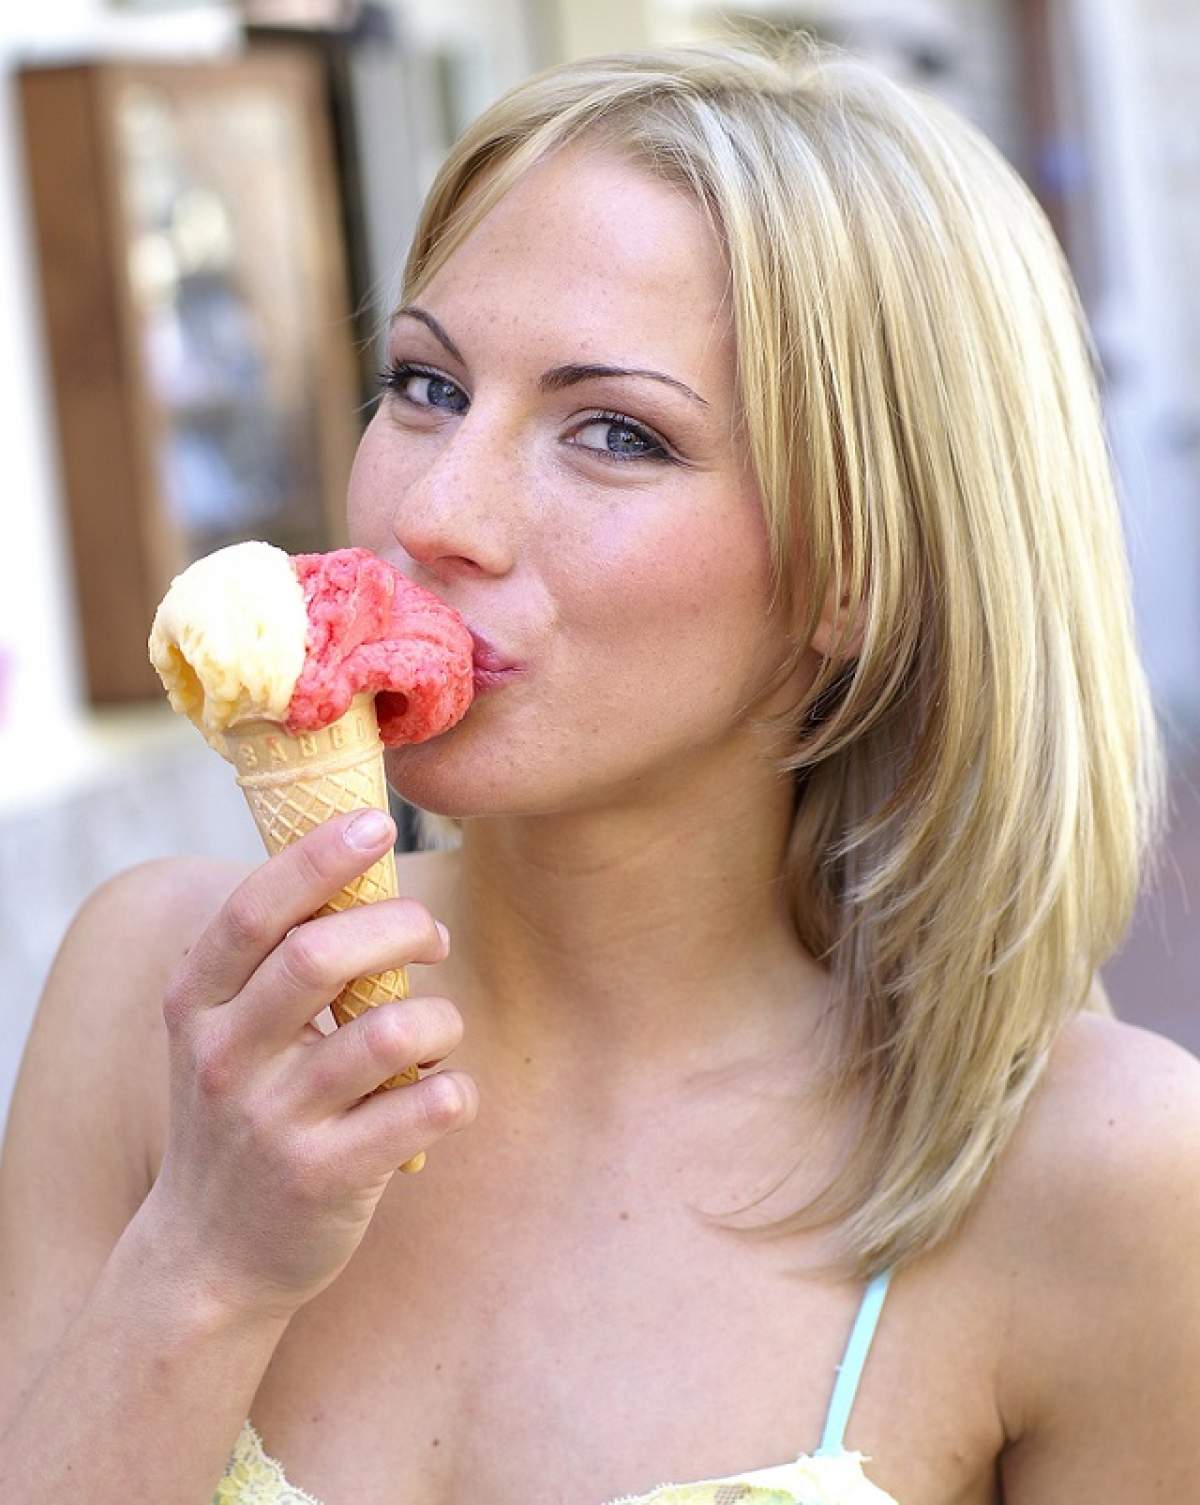 ÎNTREBAREA ZILEI: MARŢI - De ce nu este bine să mâncăm îngheţată atunci când e caniculă?